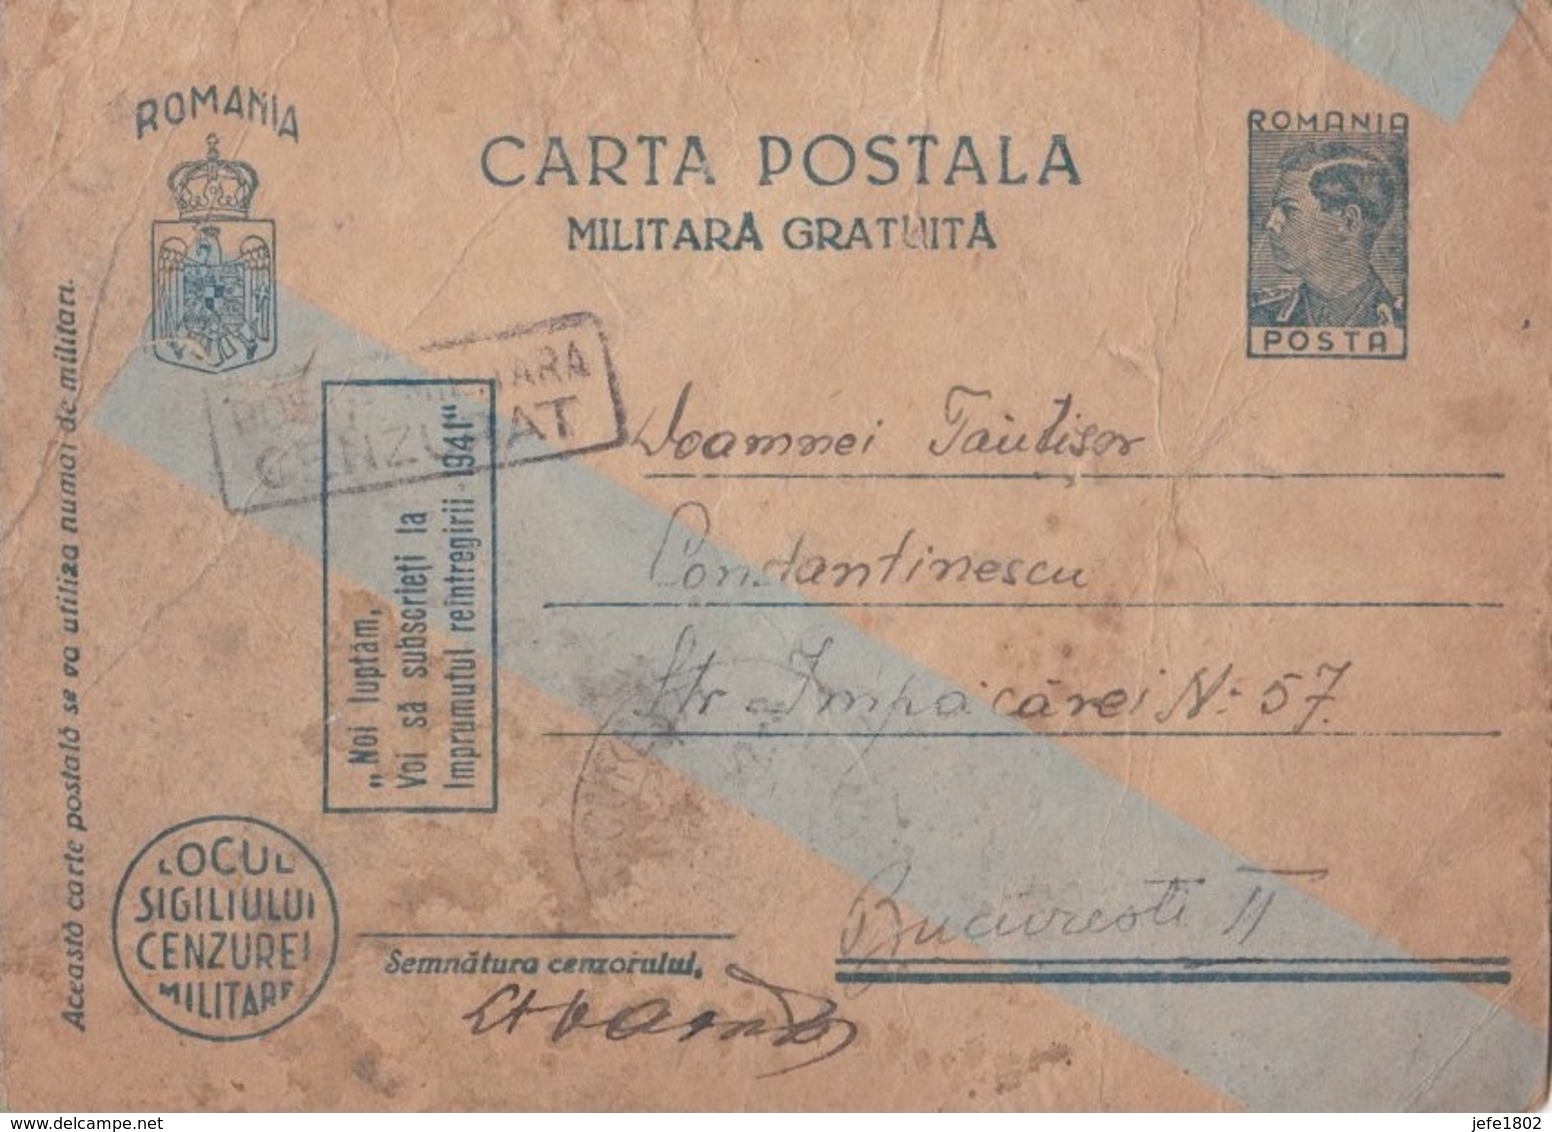 WO II - Carta Postala - Militara Gratuita - Vrijstelling Van Portkosten